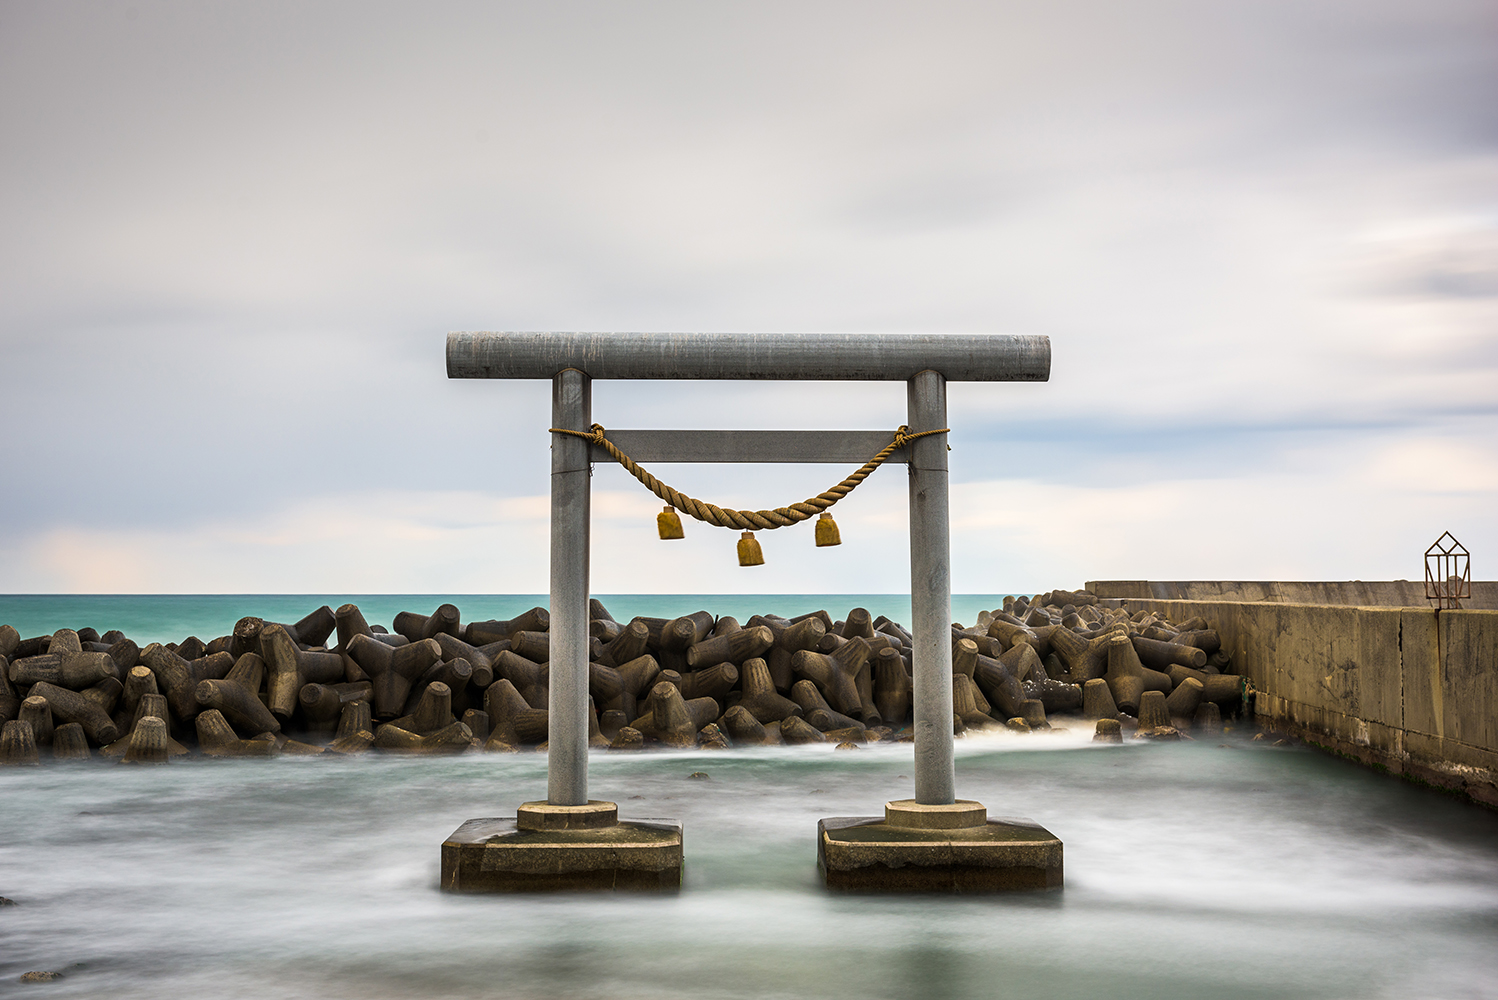 Grey, concrete Torii gate in the sea in Japan.